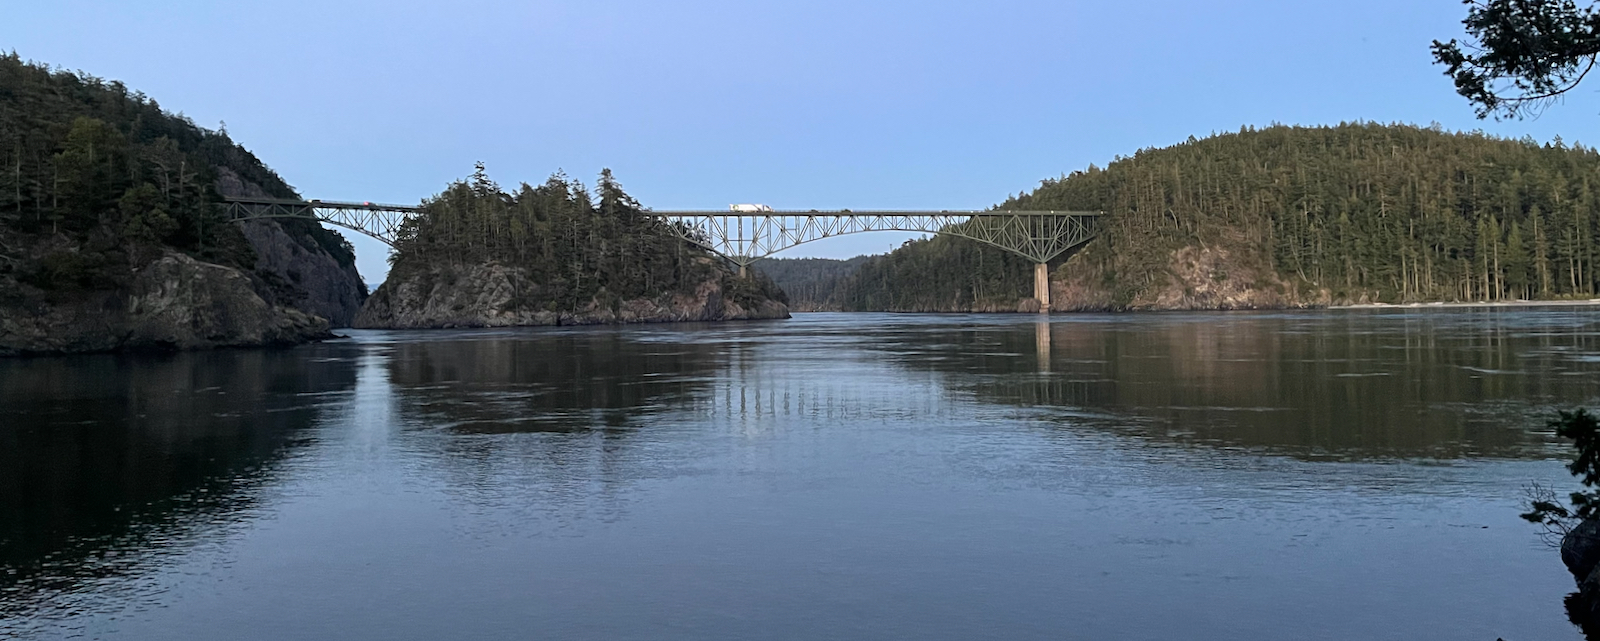 High bridges over ebbing water